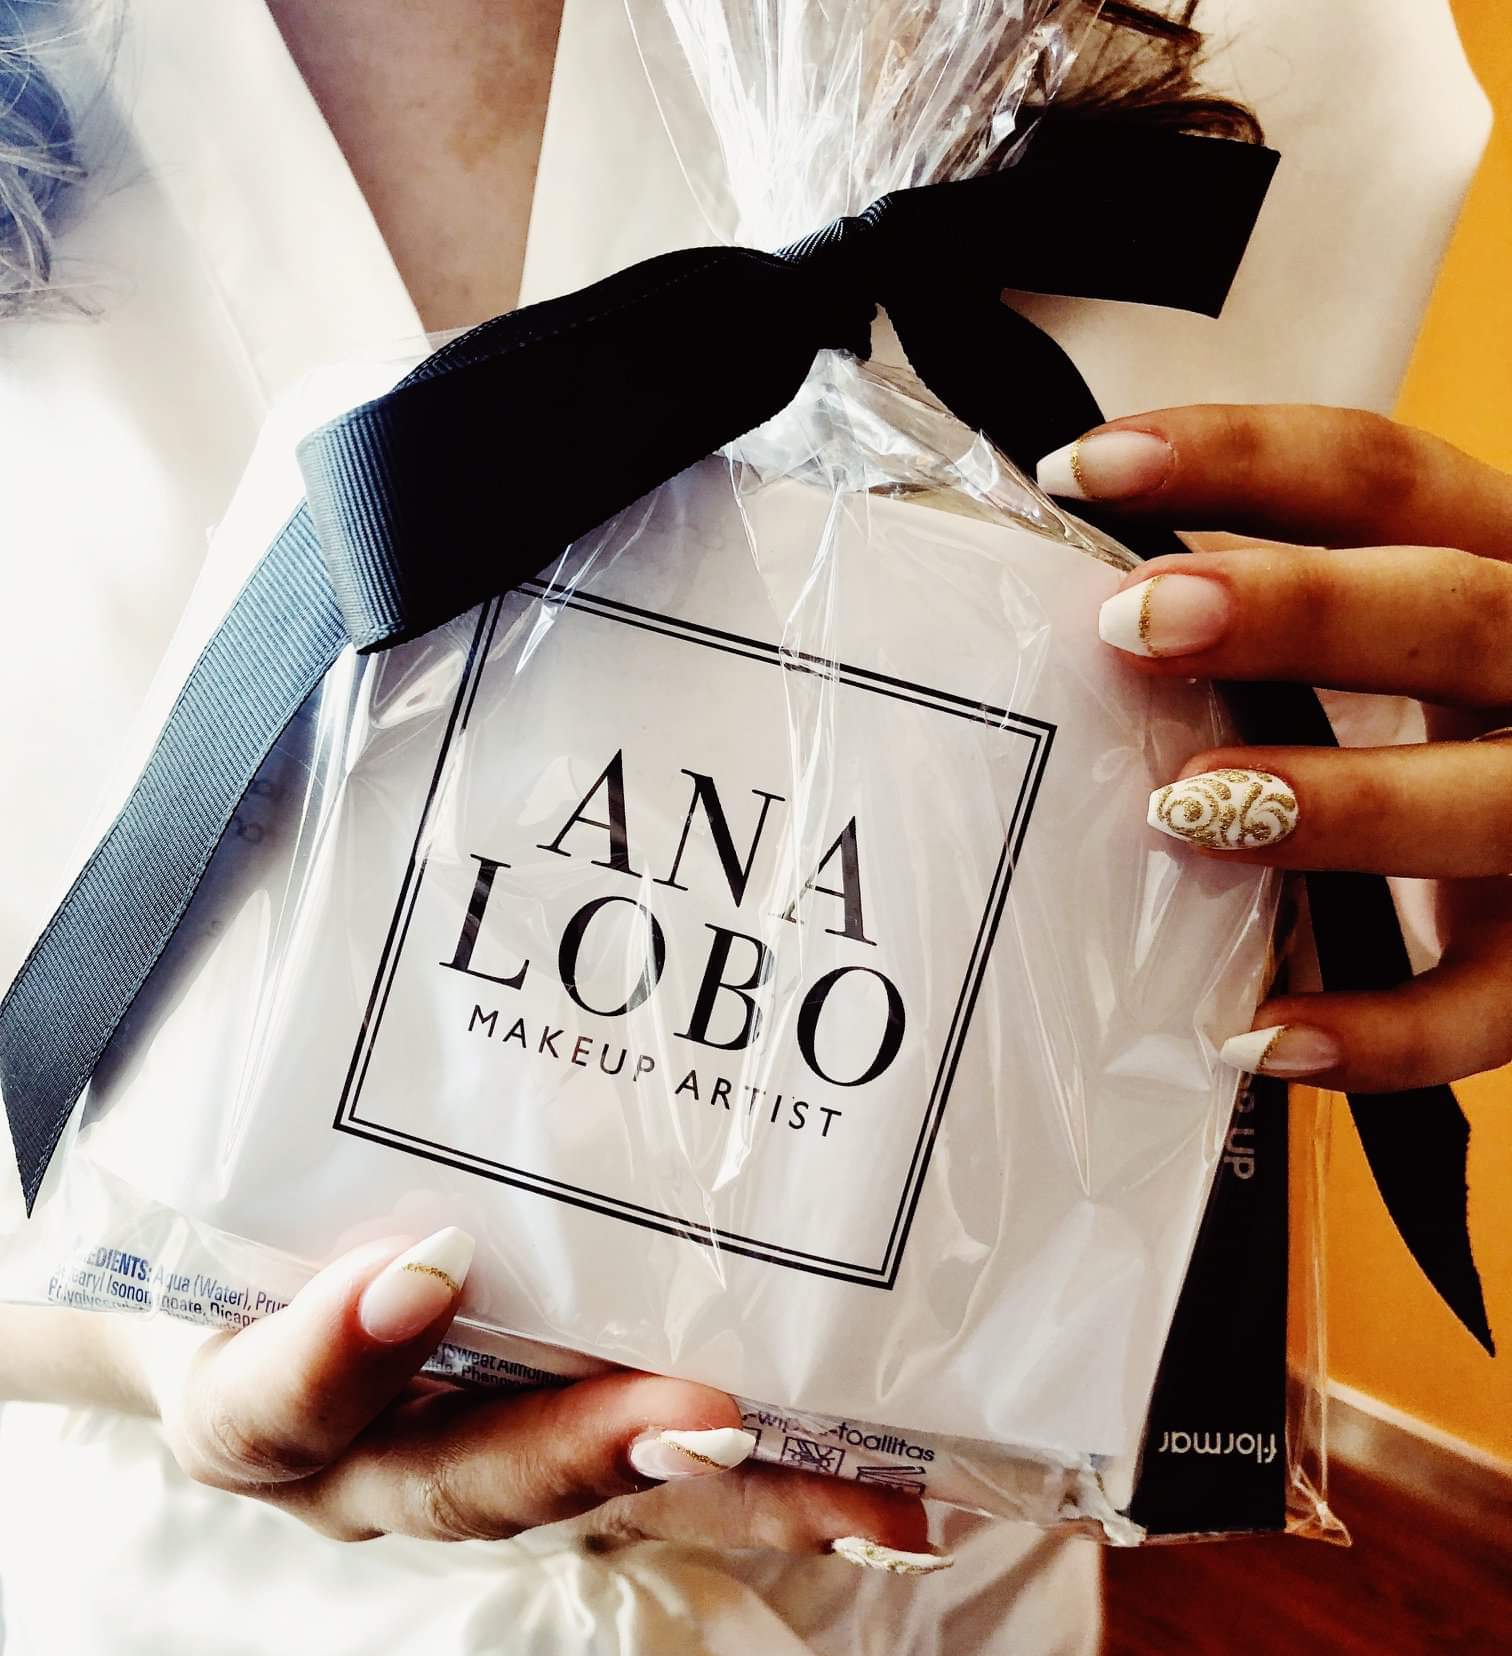 Ana Lobo Makeup Artist